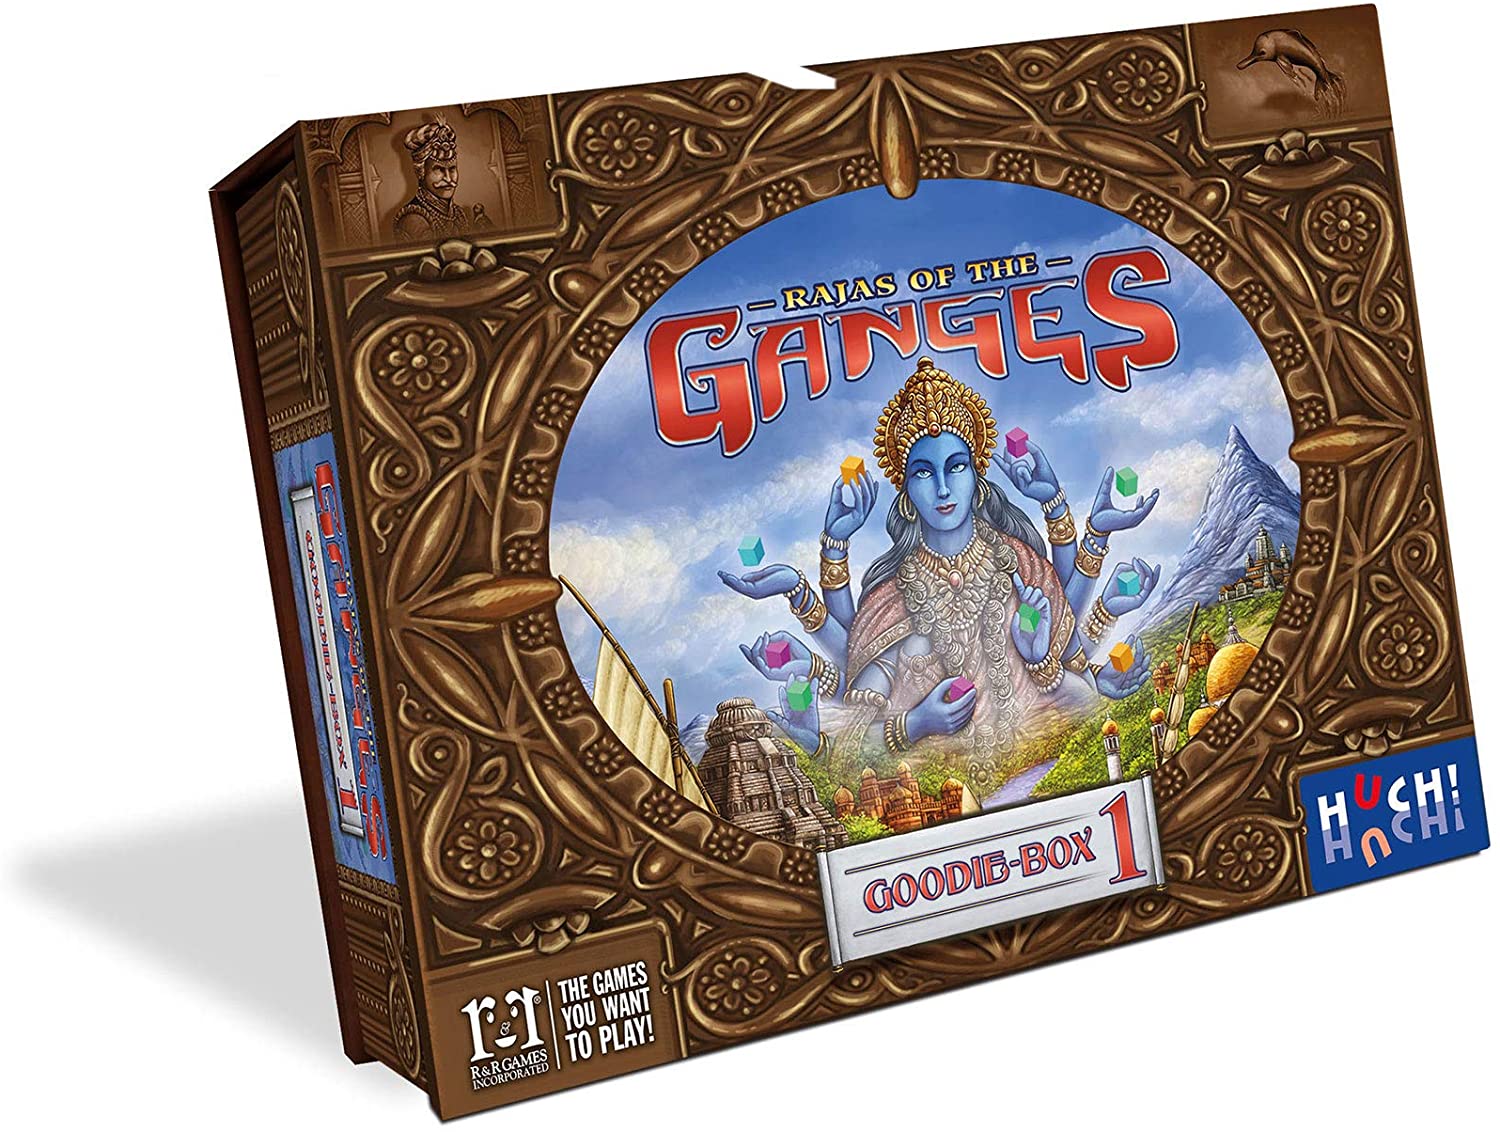 (BSG Certified USED) Rajas of the Ganges - Goodie Box 1